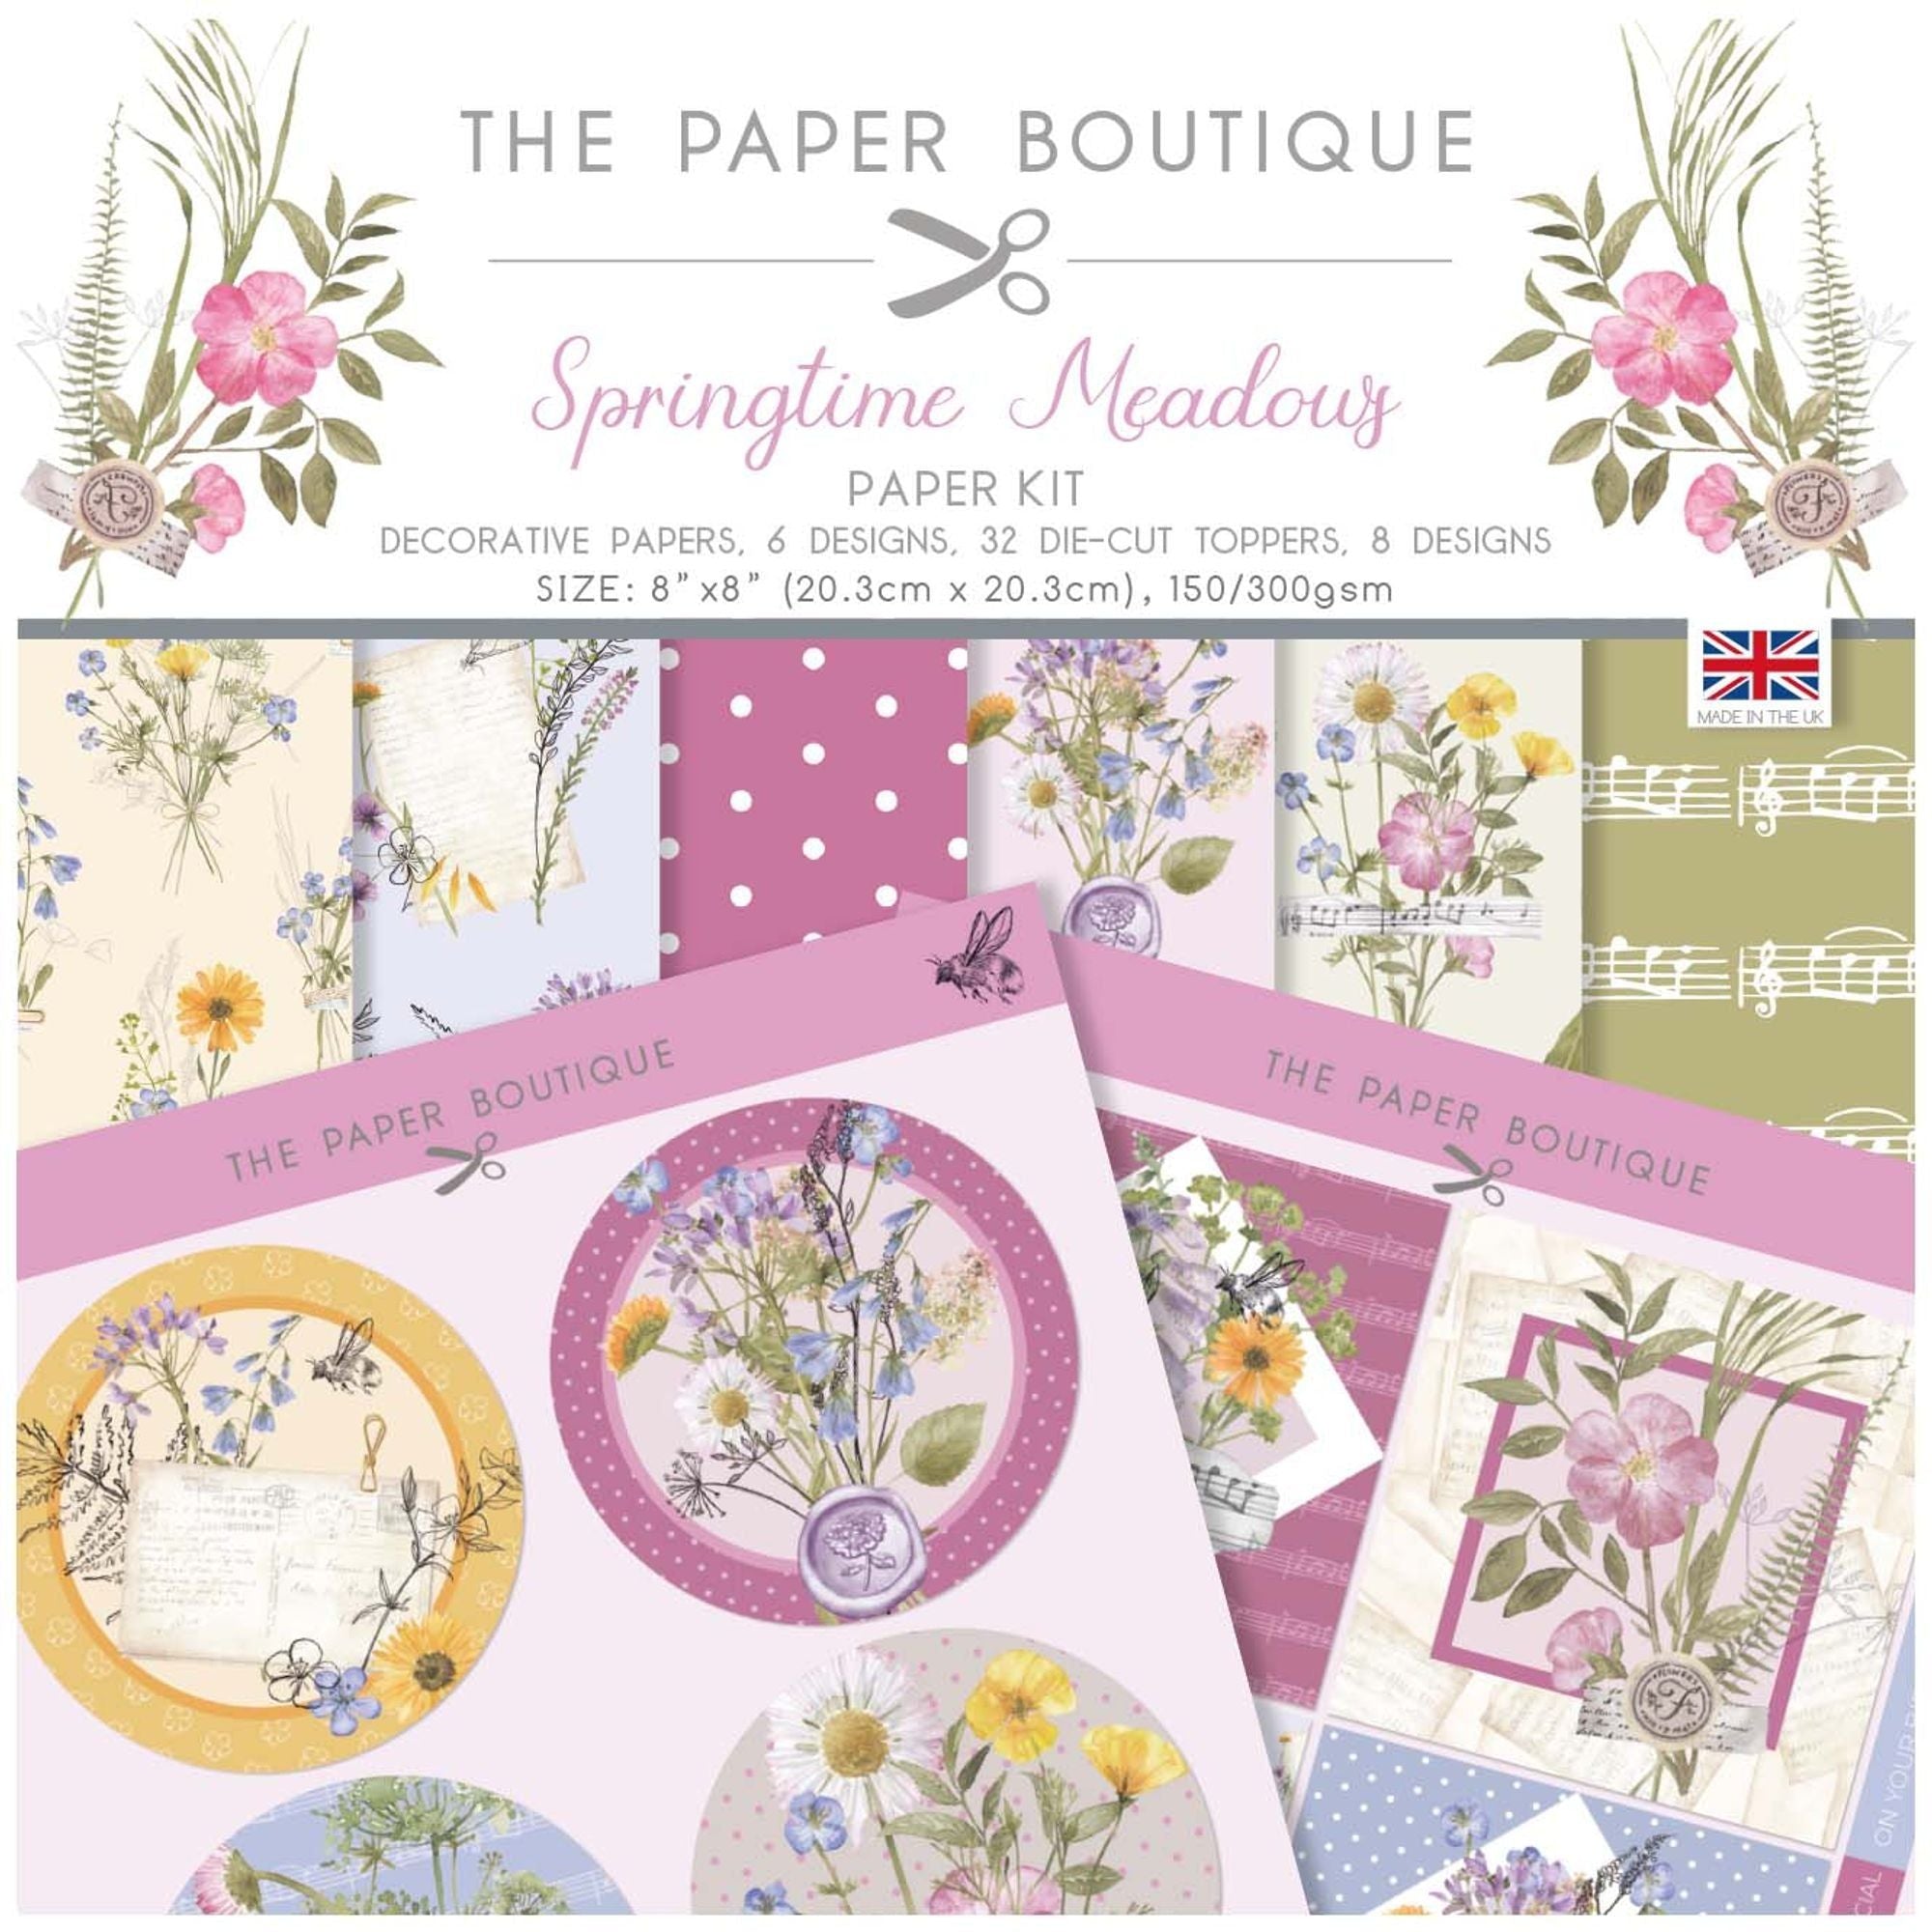 The Paper Boutique Springtime Meadows Paper Kit